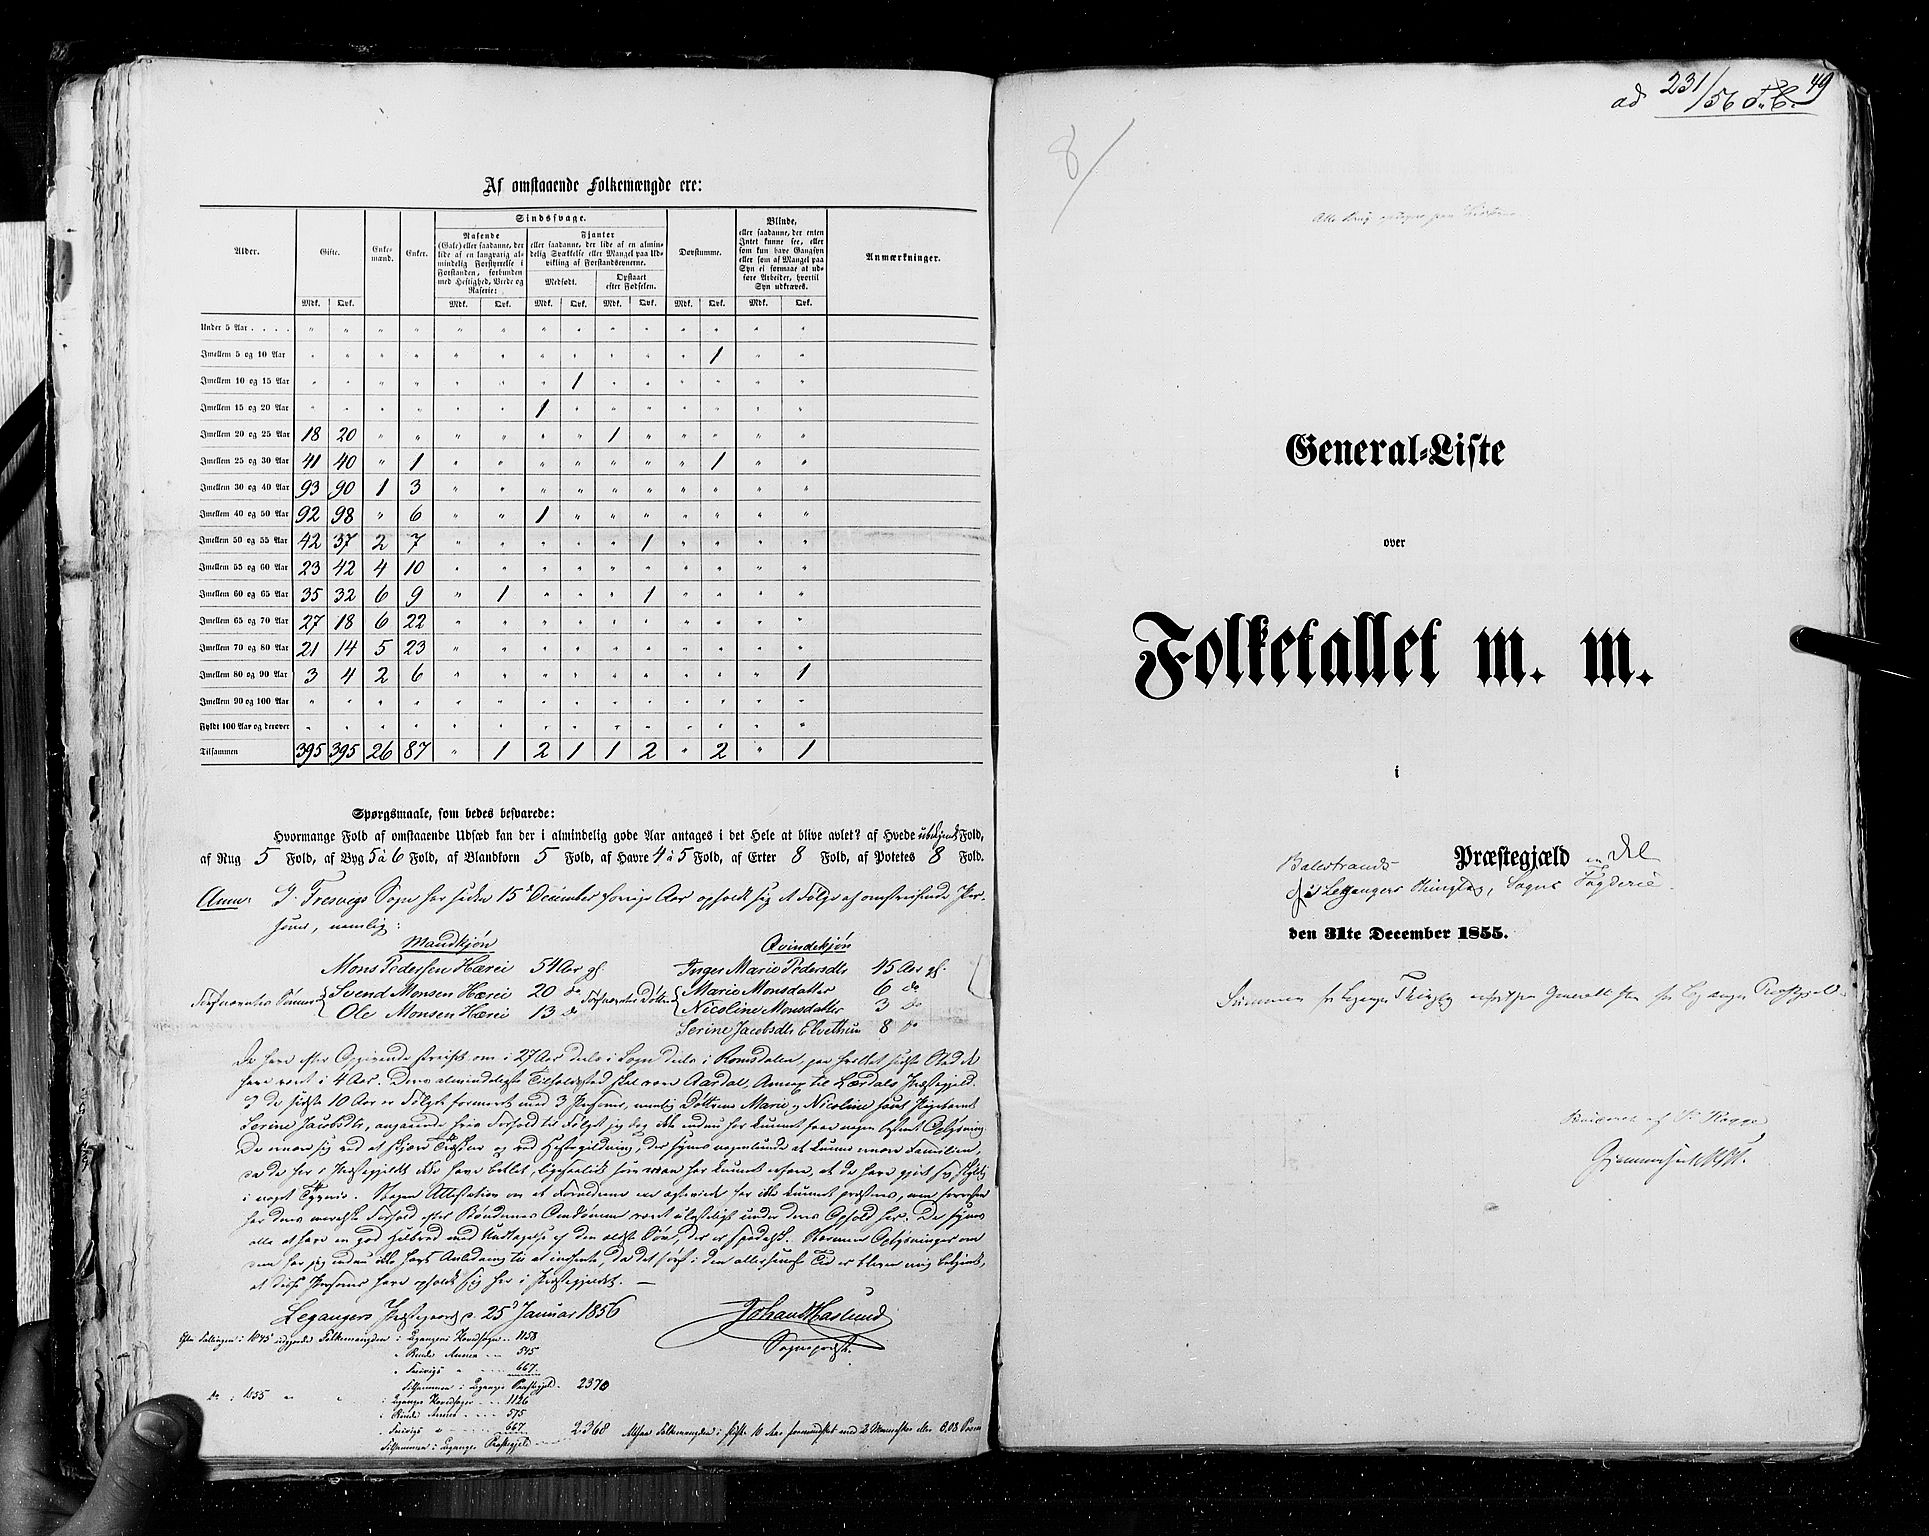 RA, Census 1855, vol. 5: Nordre Bergenhus amt, Romsdal amt og Søndre Trondhjem amt, 1855, p. 49